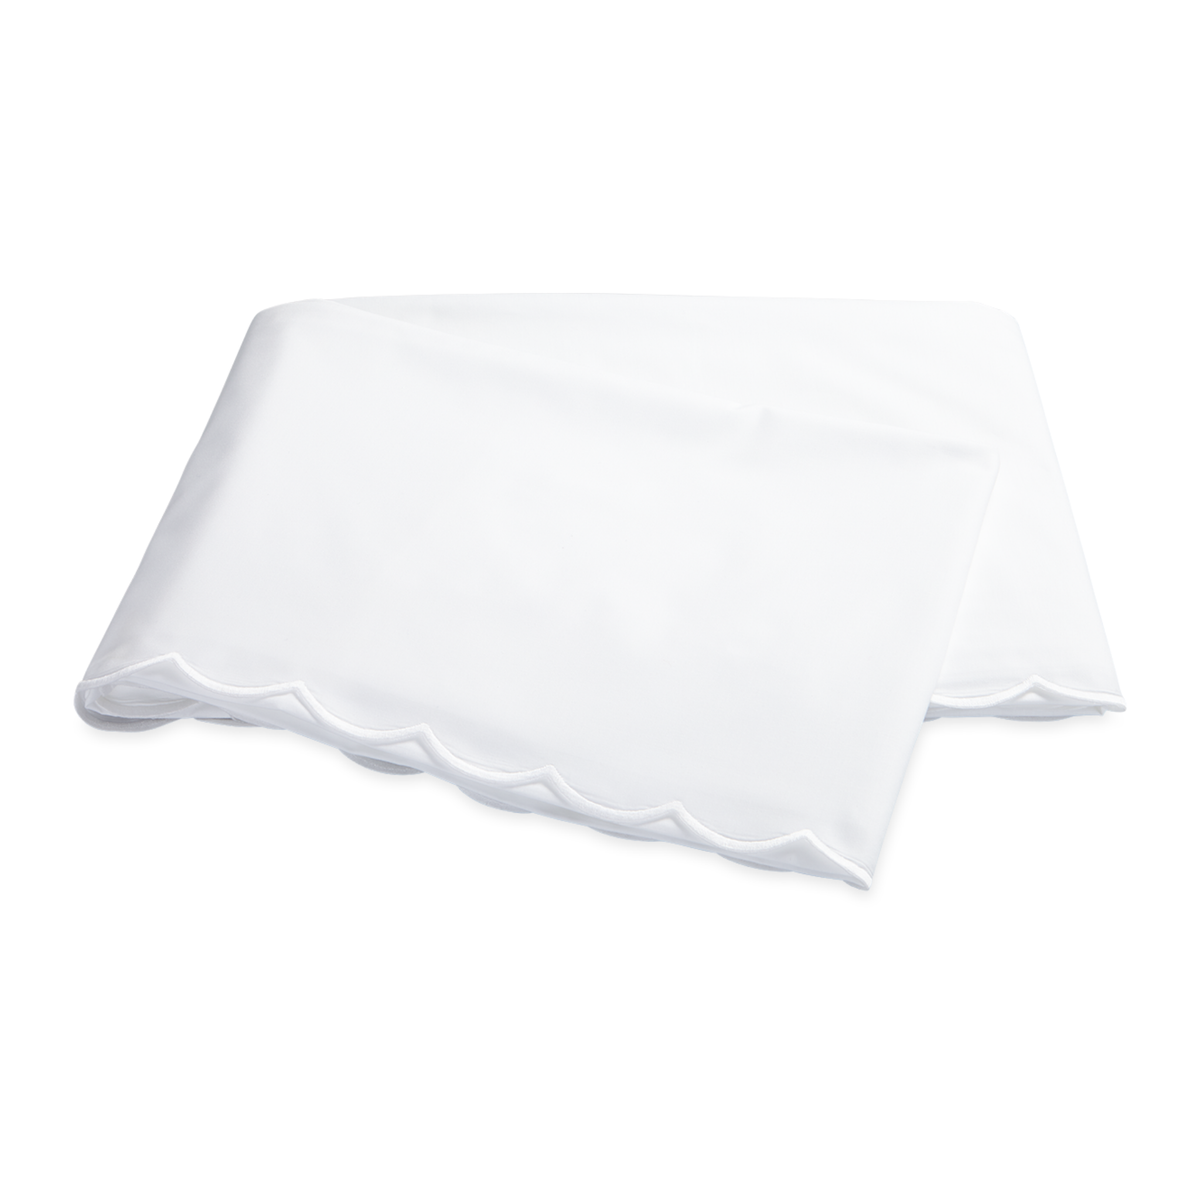 Flat Sheet of Matouk Dakota Bedding in White Color